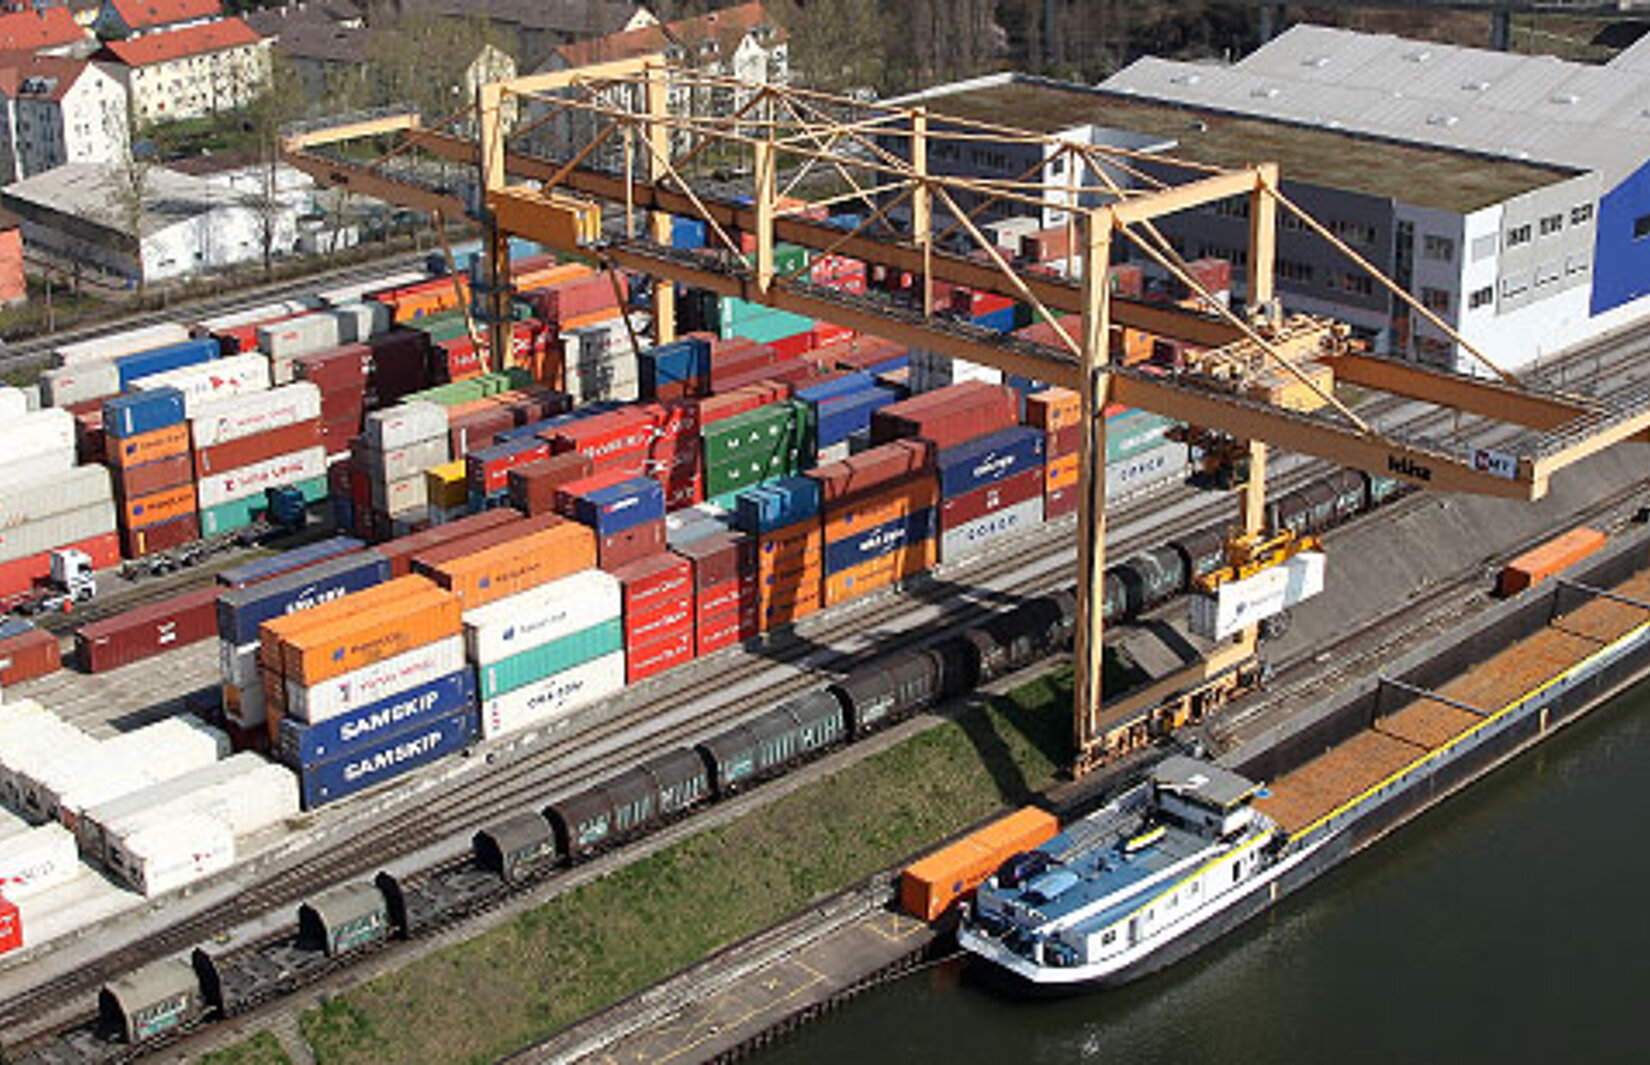 Container-Terminal Basel aus der Vogelperspektive